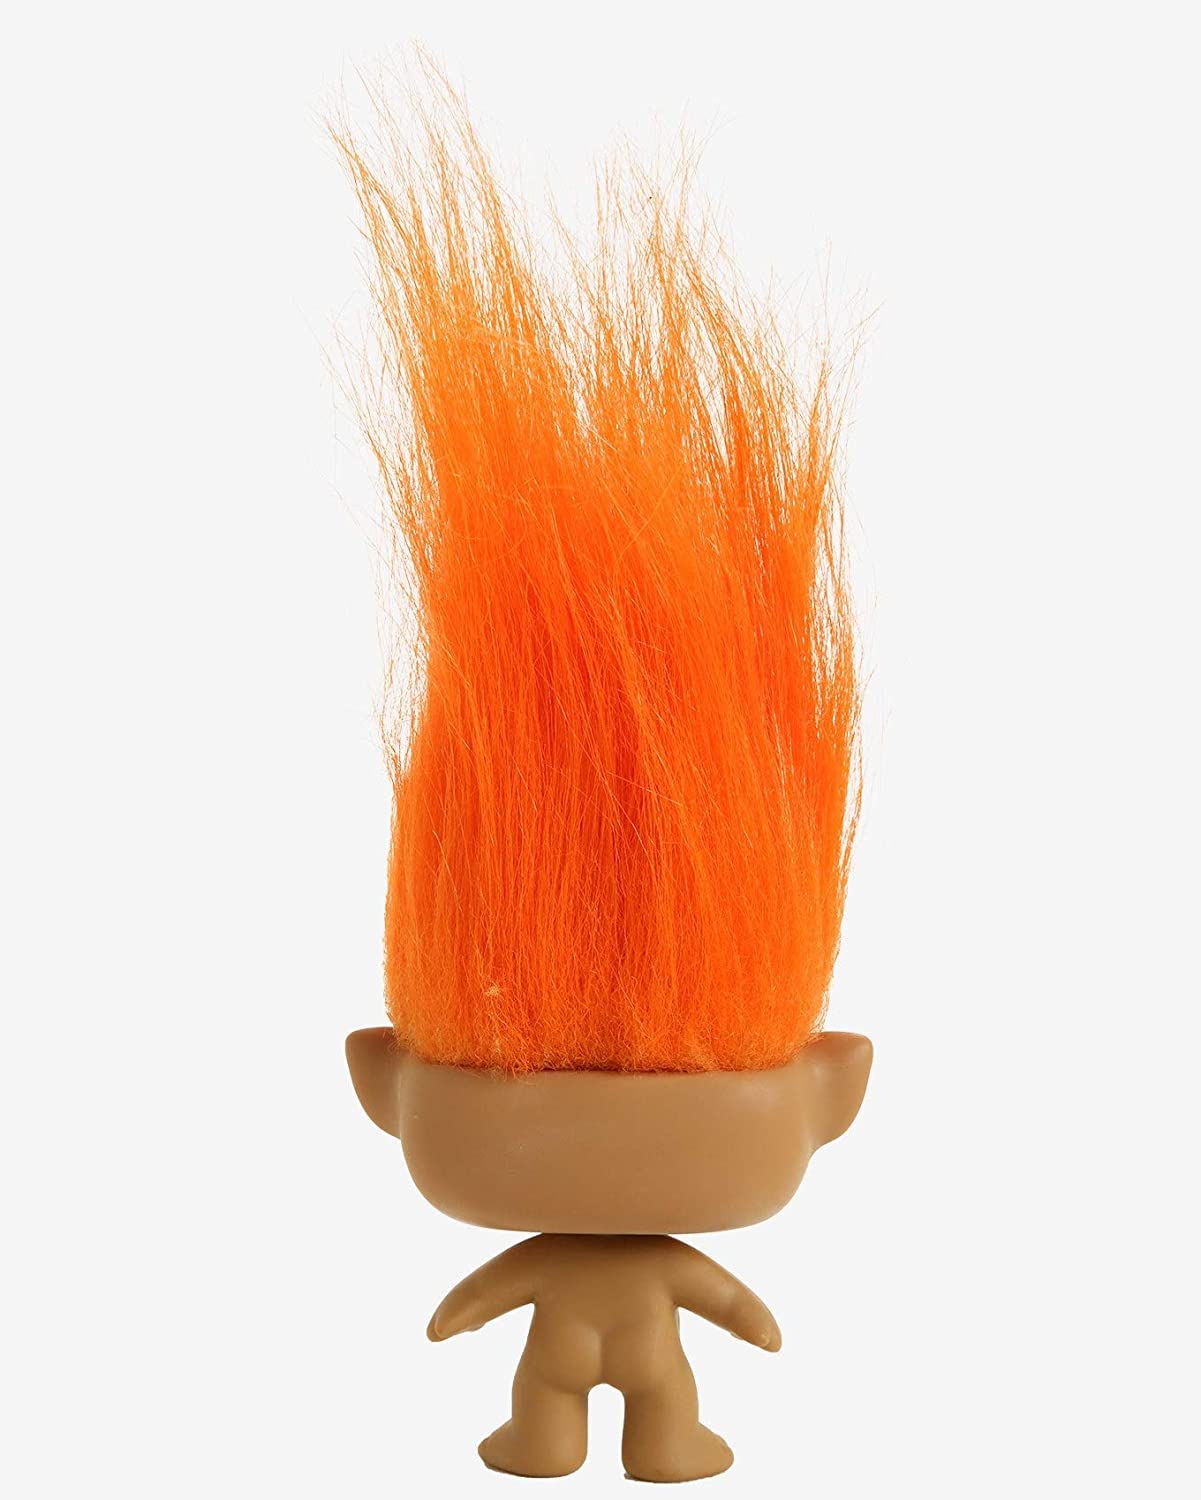 Funko Pop!: Trolls - Orange Troll, Multicolor